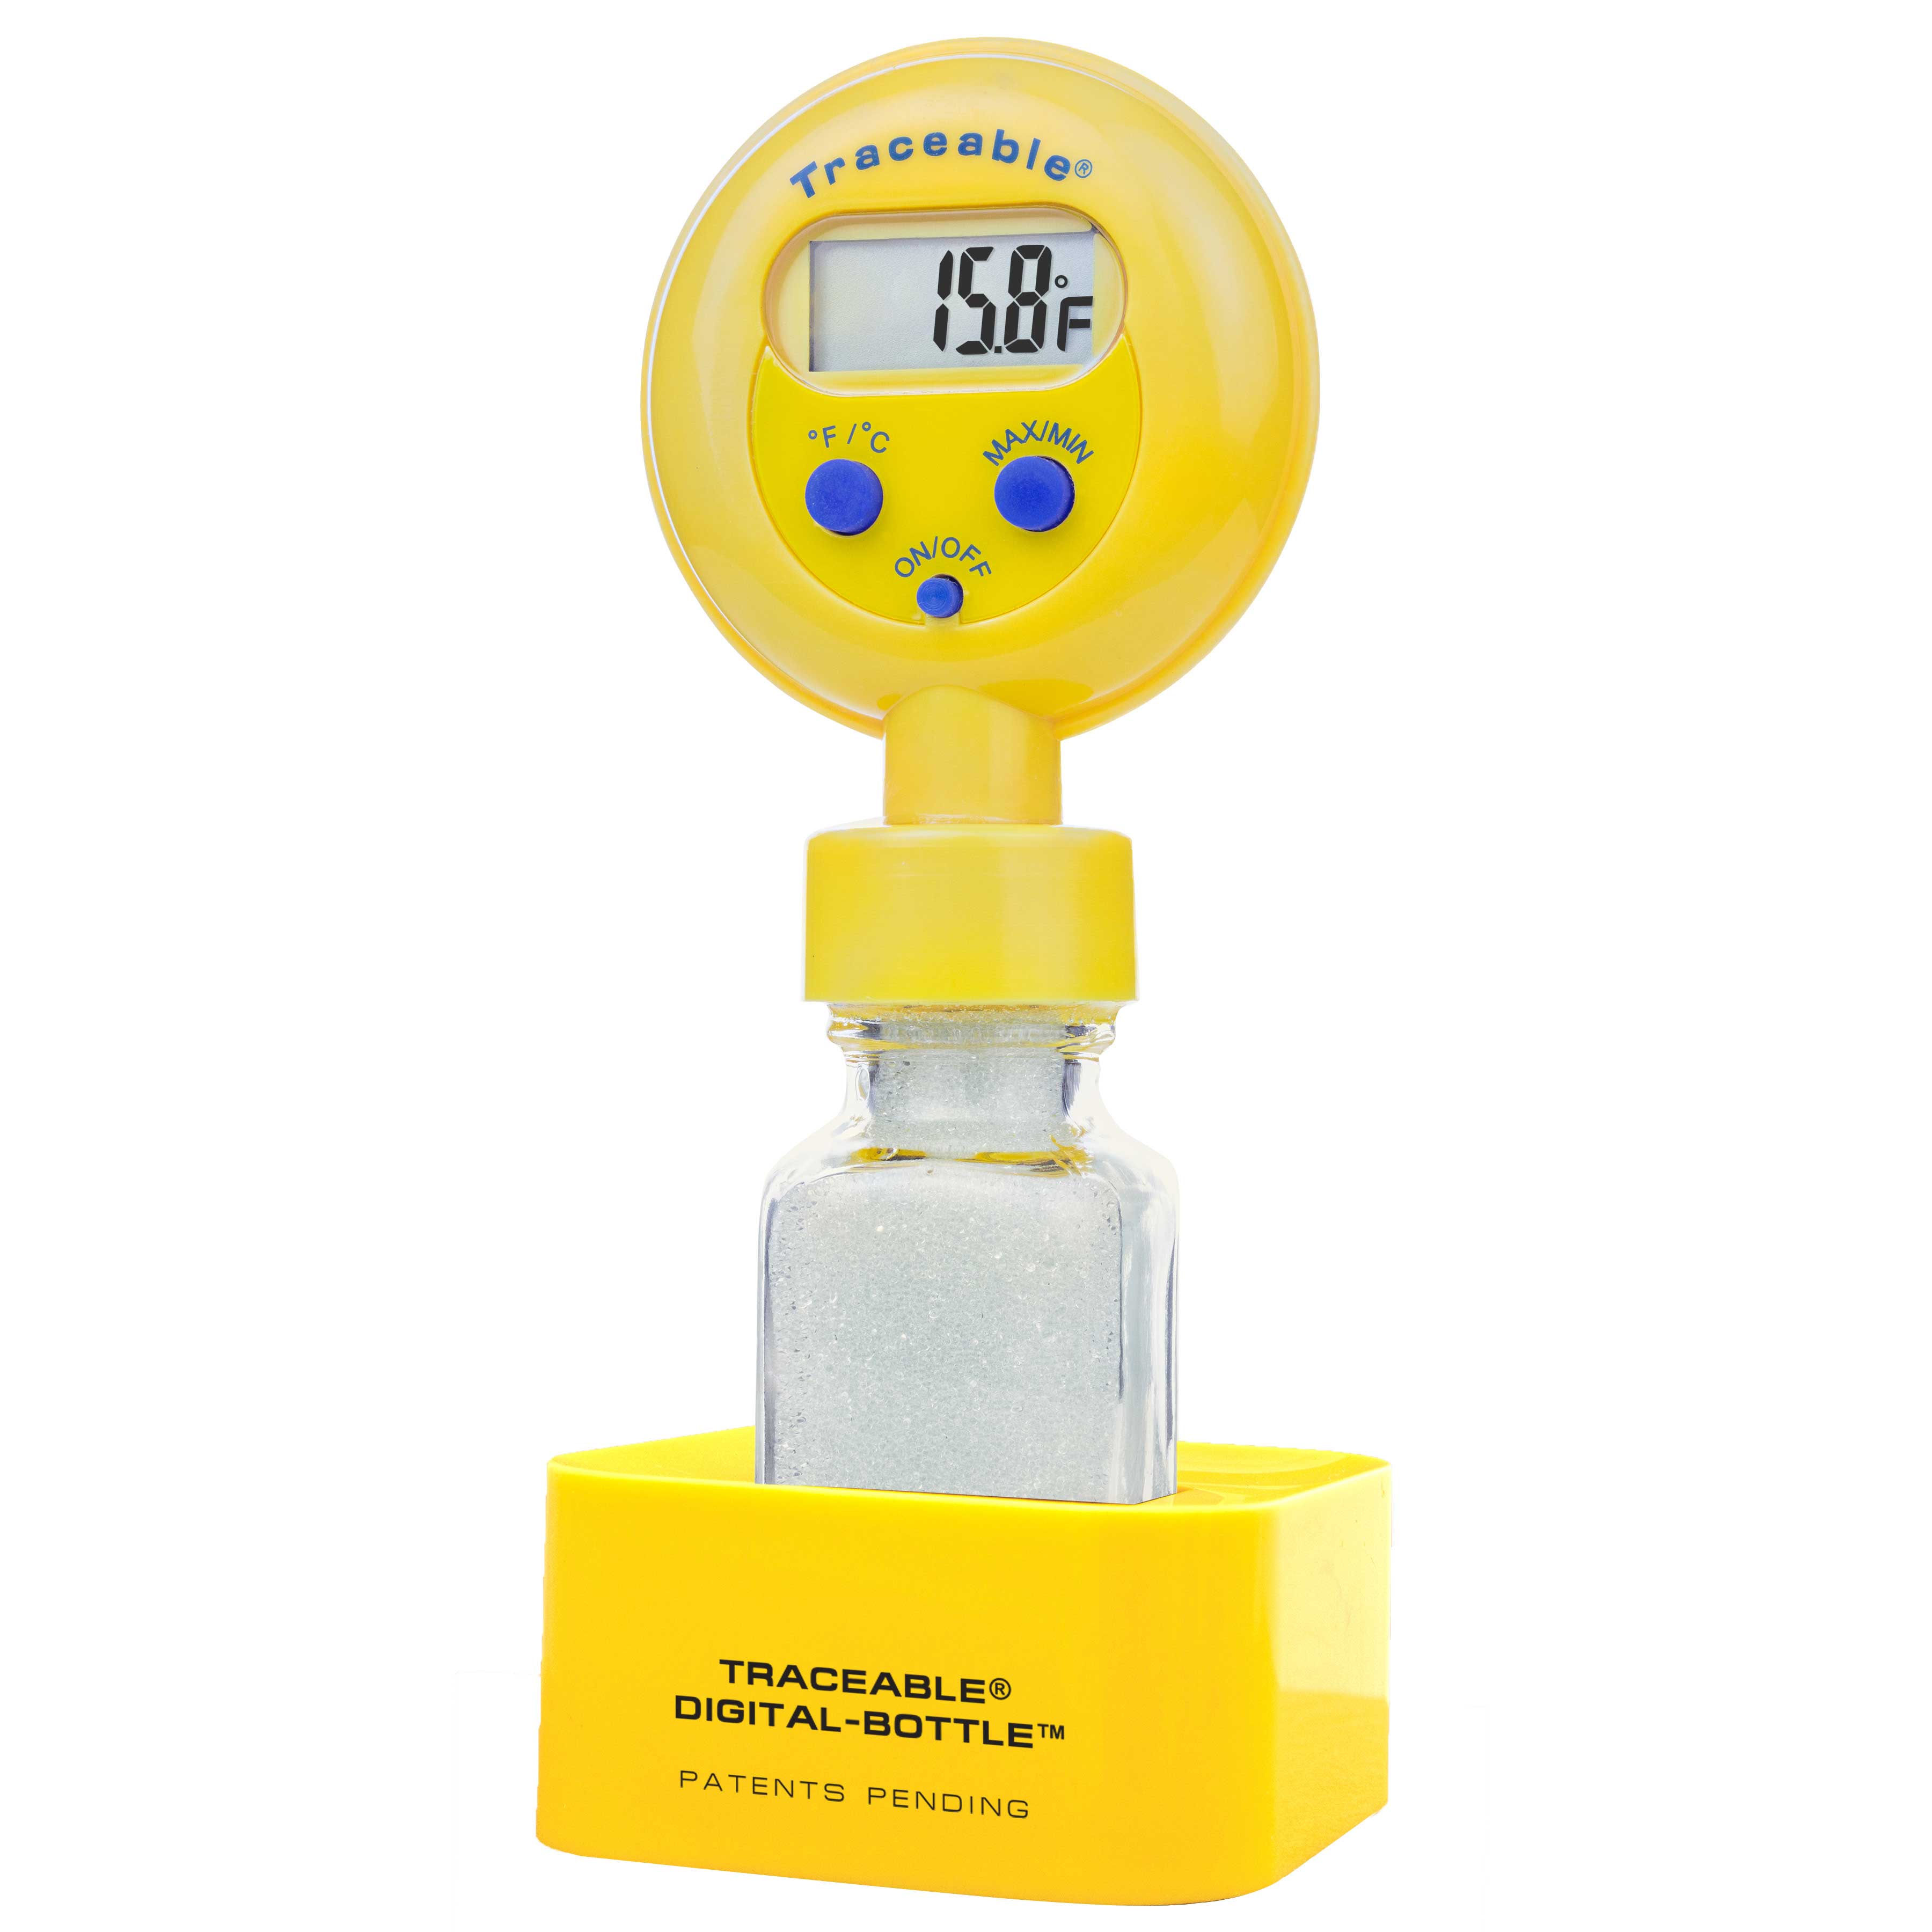 Termómetro para refrigerador/congelador Traceable Digital-Bottle.  TRACEABLE. Rango temp.: –20,0 a 50,0°C. Exactitud: ±0,5°C (0 a 50ºC), ±1°C  resto. Precisión: 0,1ºC. Sondas: Botella llena de cuentas de vidrio -  Scharlab